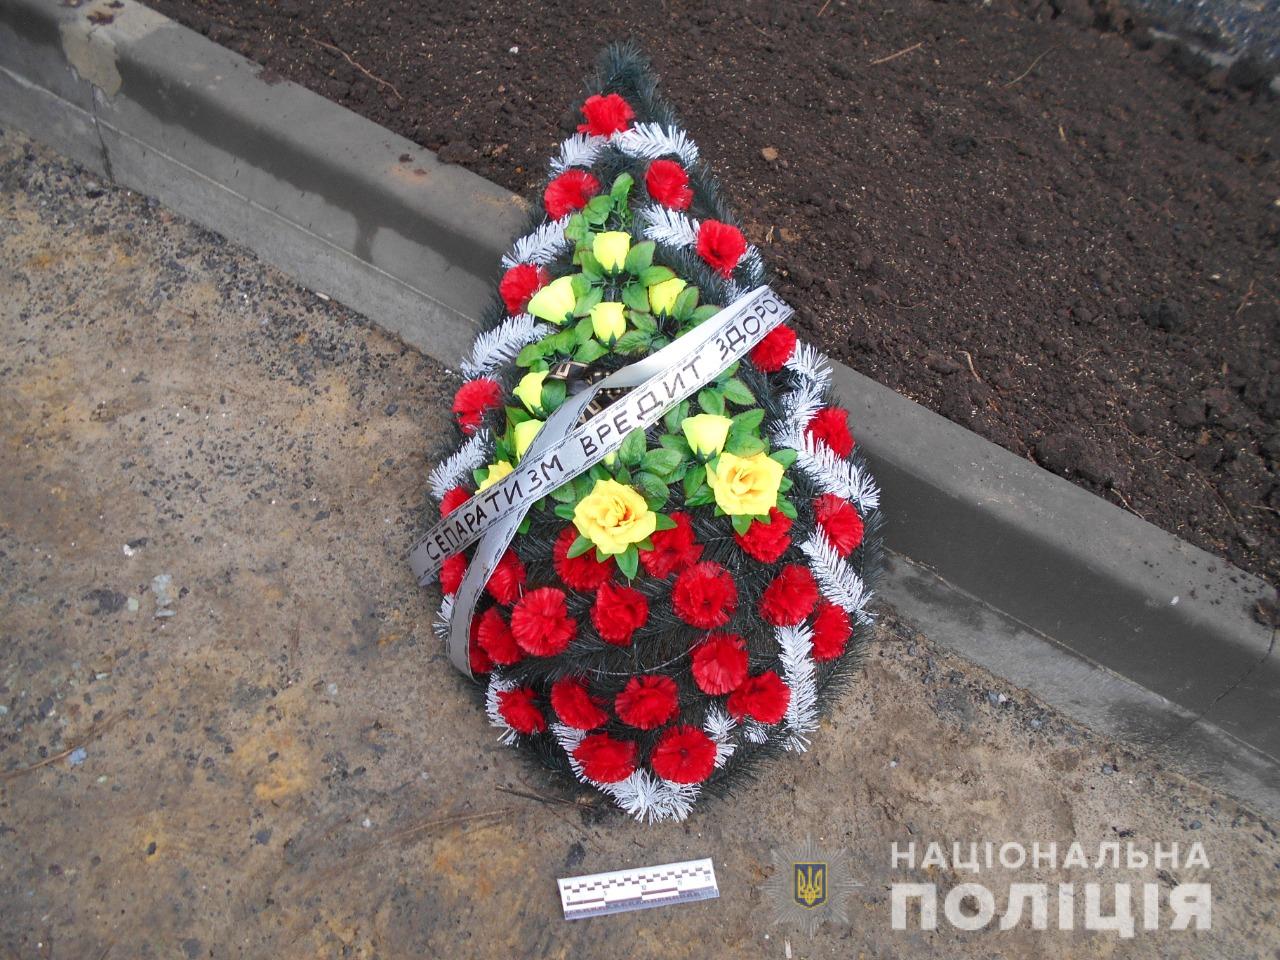 Стало известно, кто те люди, которым в Харькове подбросили похоронные венки